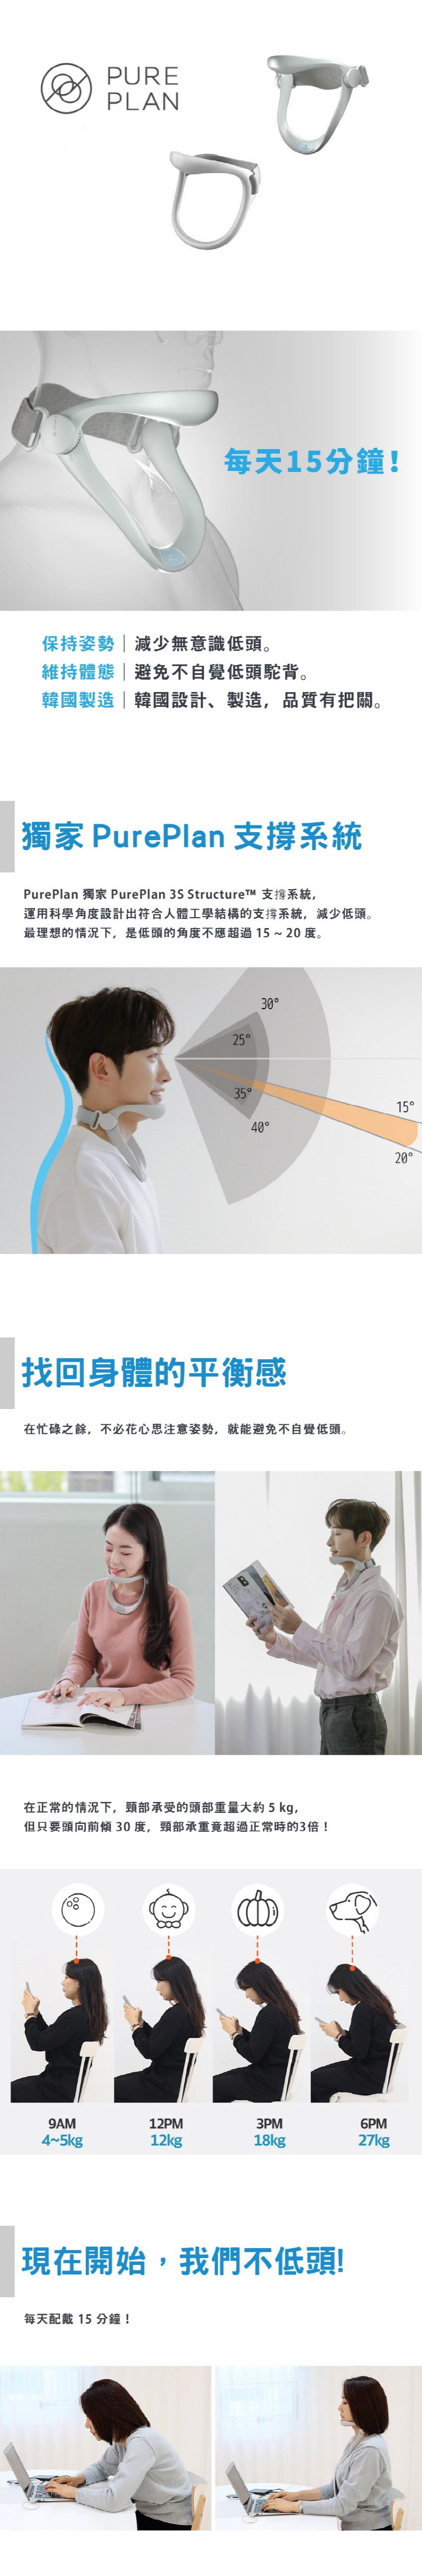 韩国 PurePlan 颈椎保护器-销售量突破10万只 轻型 满意度96% 1 件